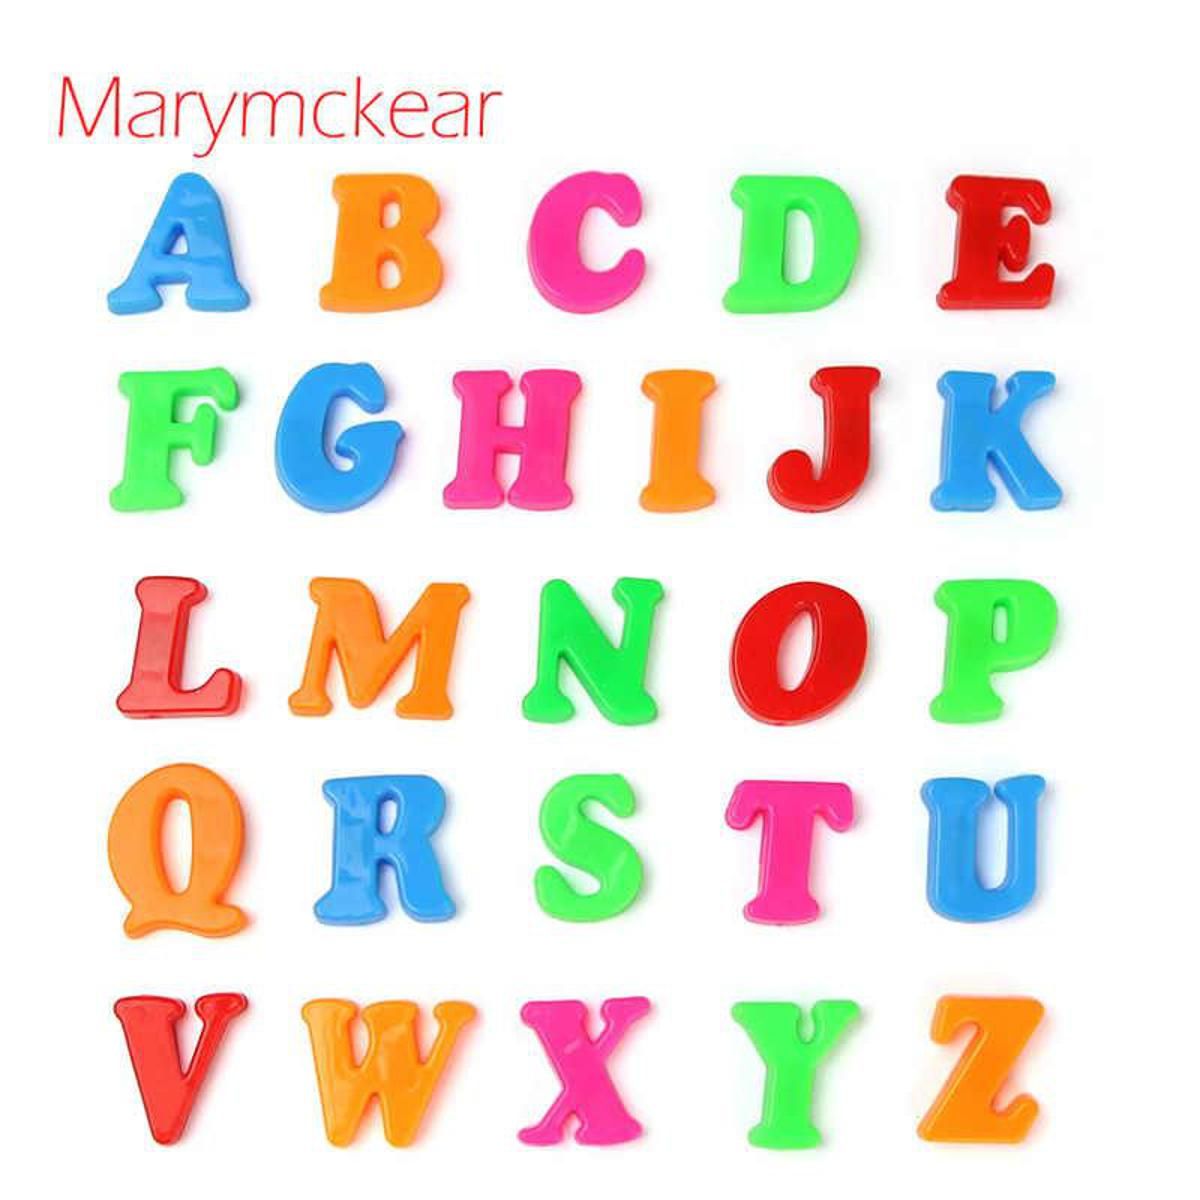 Magnetic English Capital Alphabets - 26 Pieces - Multicolour